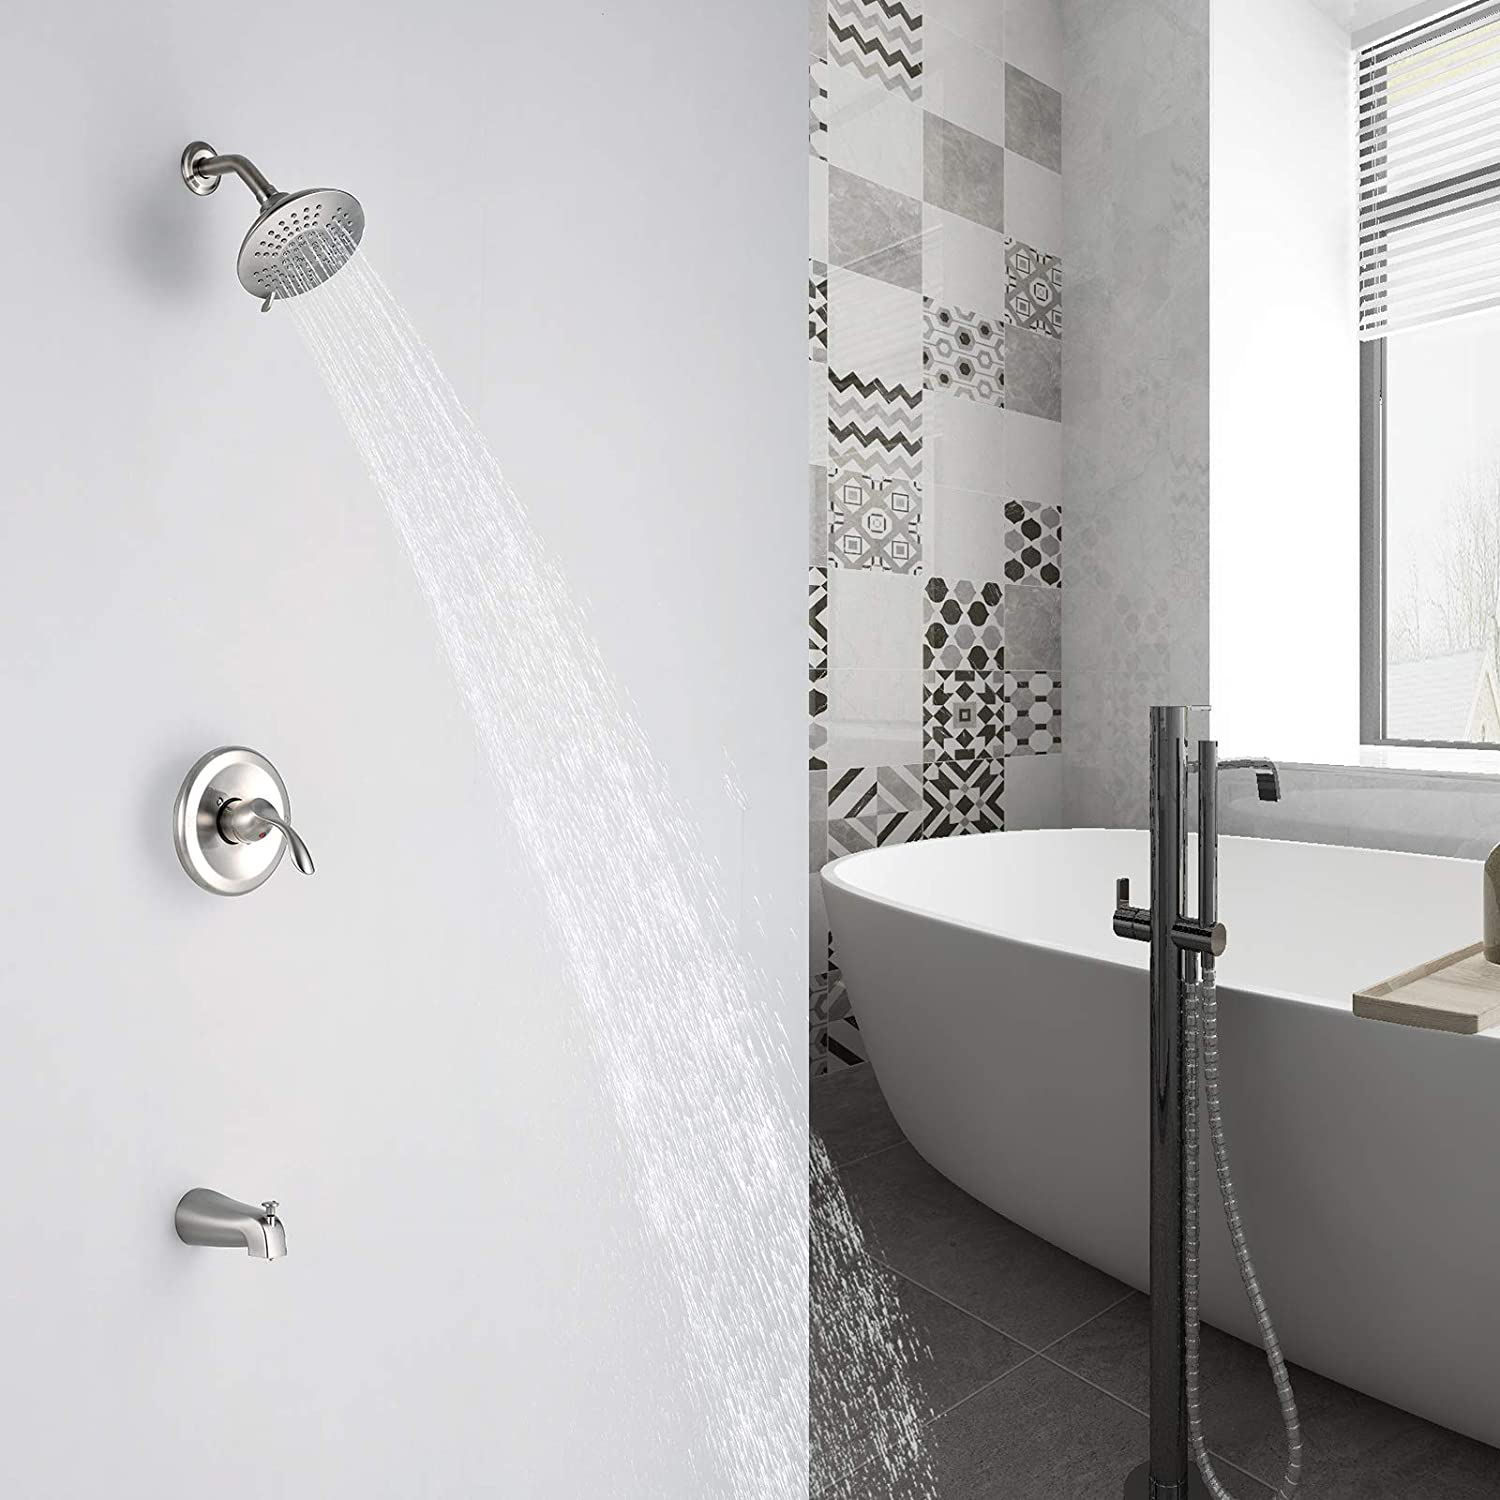 نظام الدش Aquacubic مجموعة حوض الاستحمام المثبت على الحائط وحنفية الدش مع محول زر الضغط